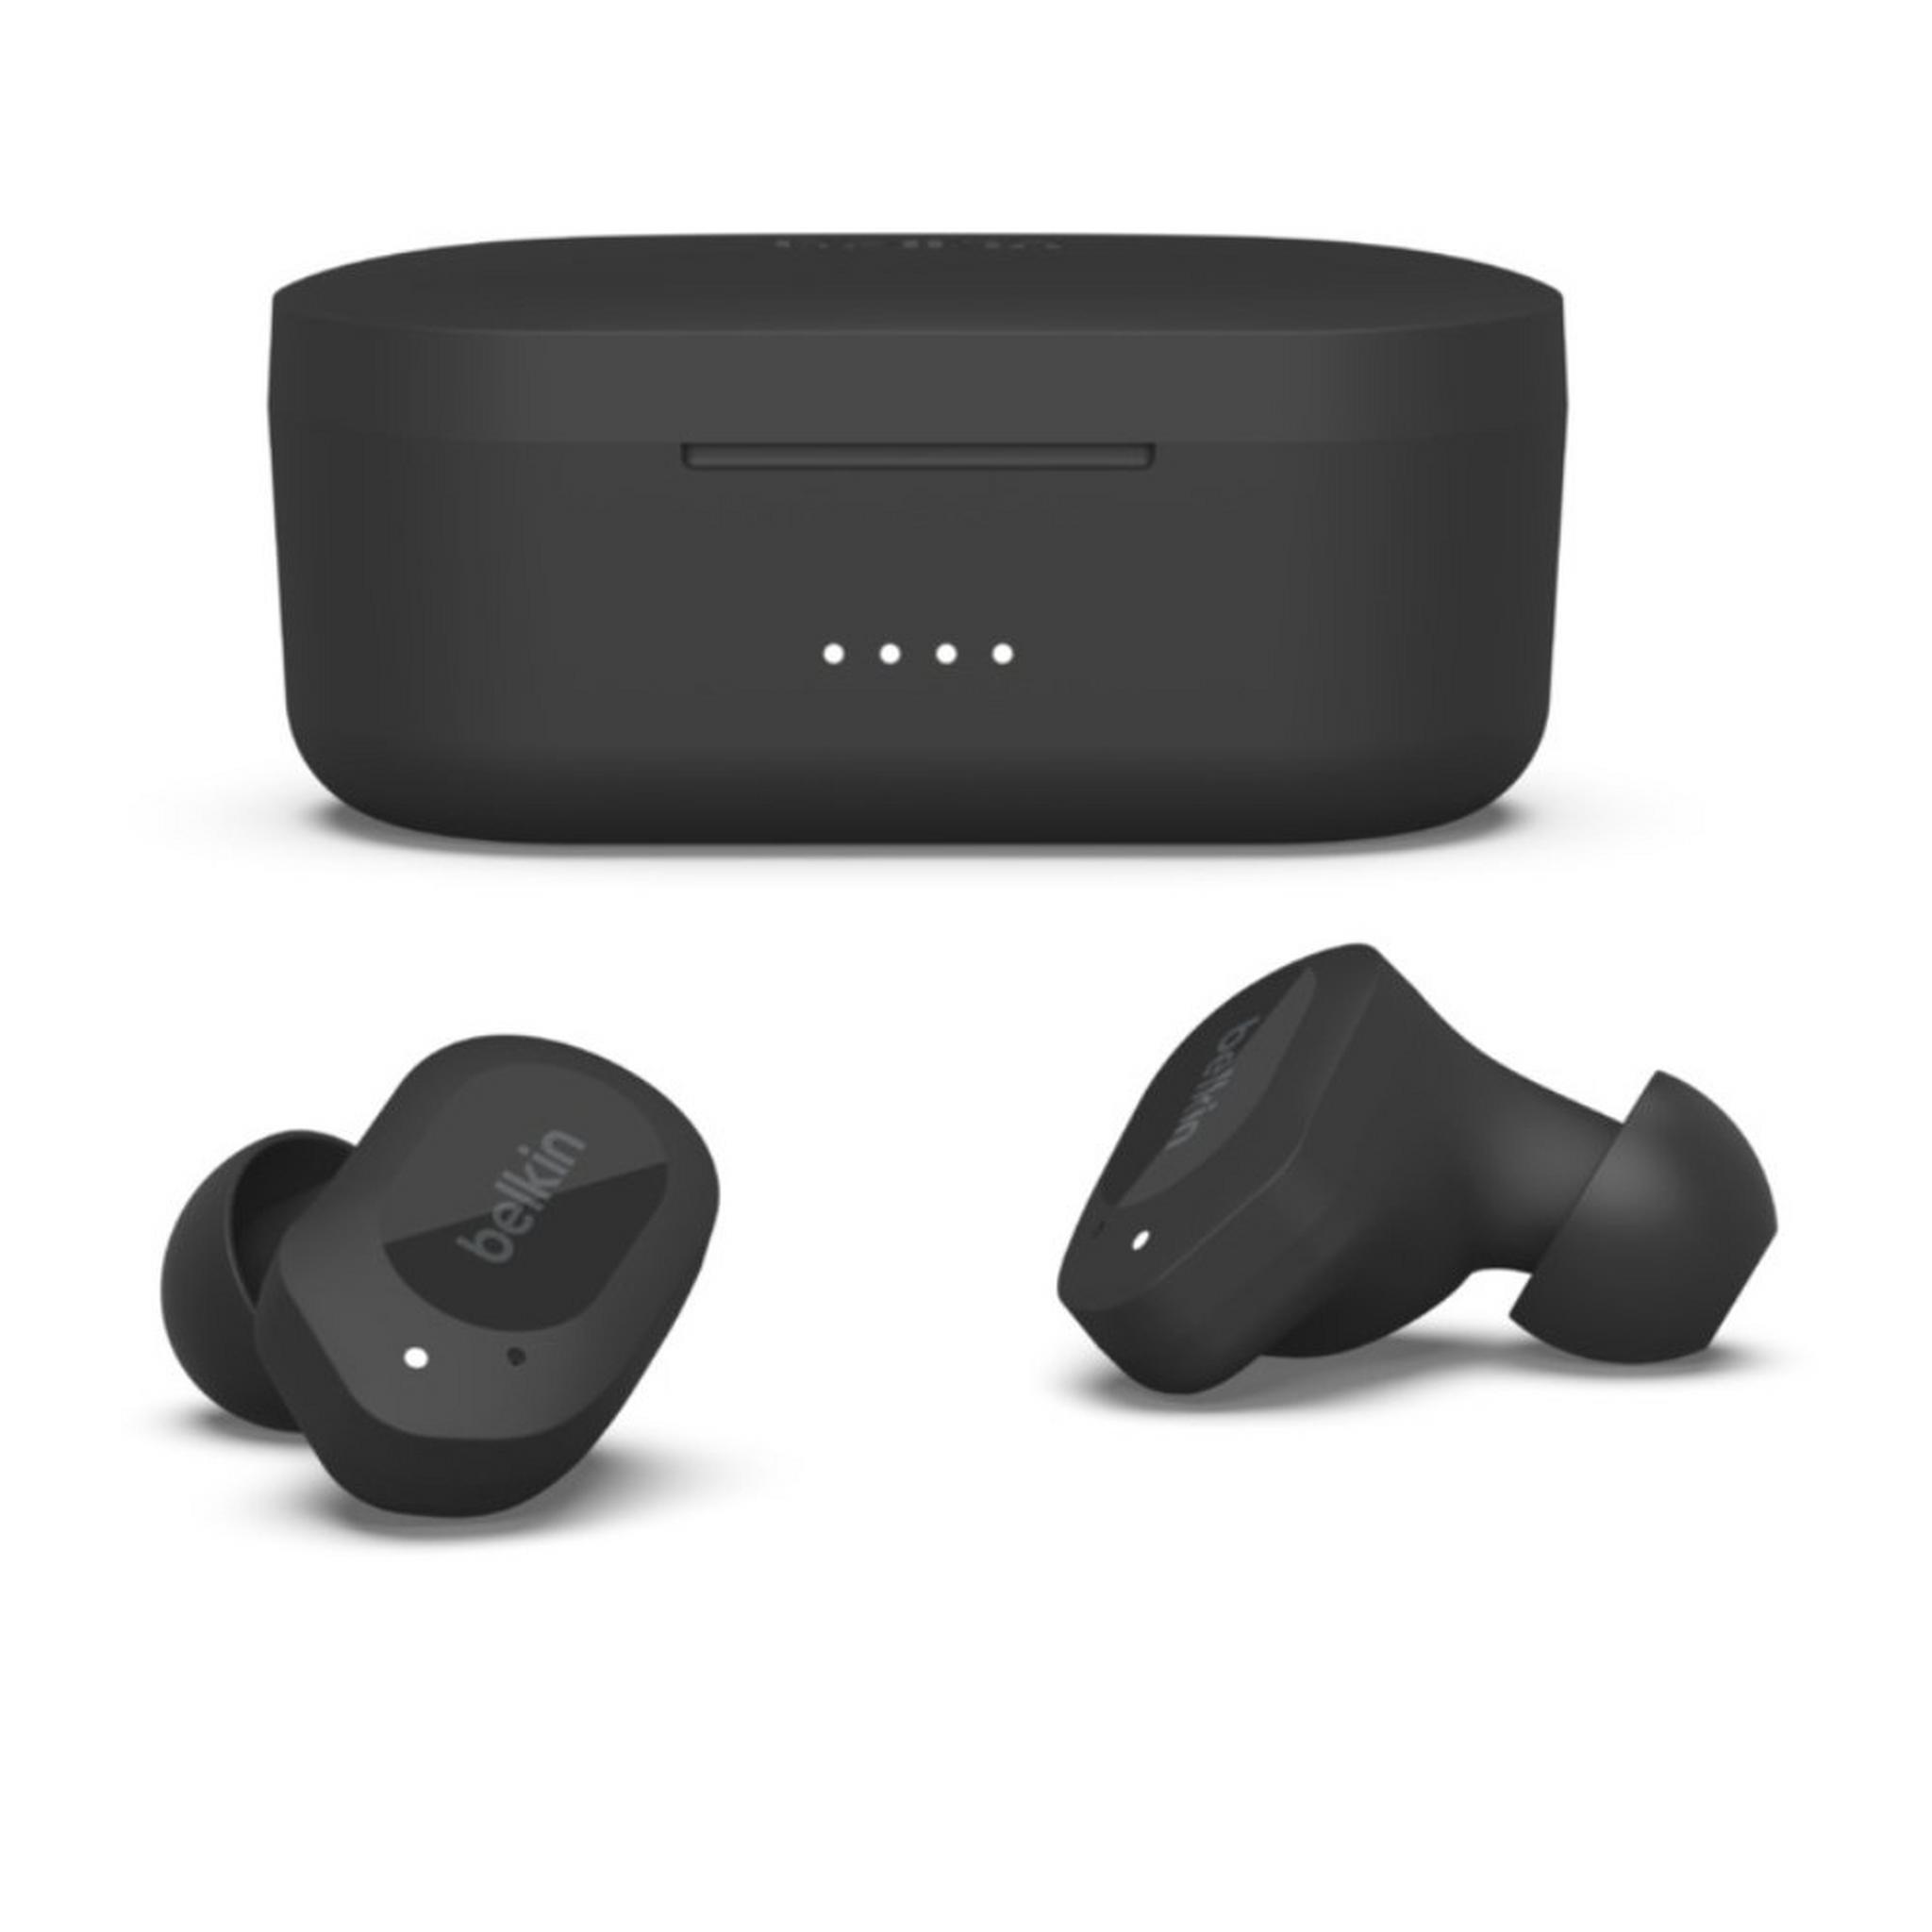 Belkin SoundForm Play True Wireless Earbuds - Black